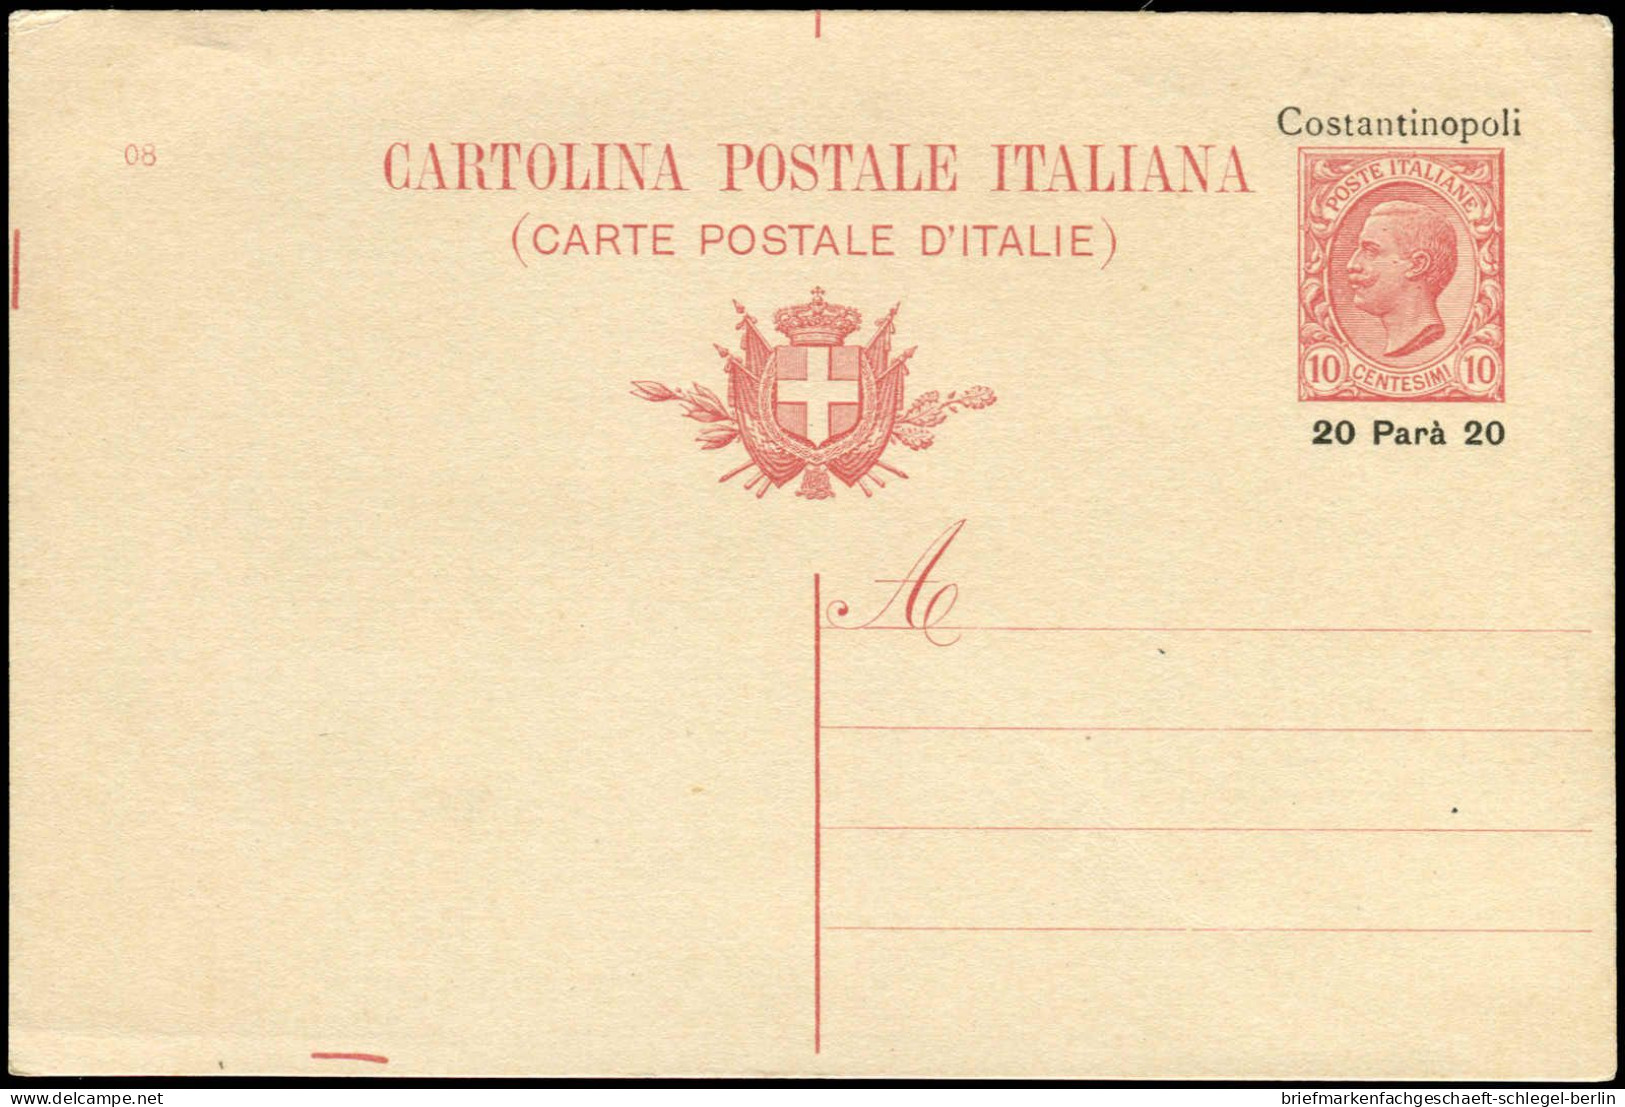 Italienische Post in der Levante, Brief